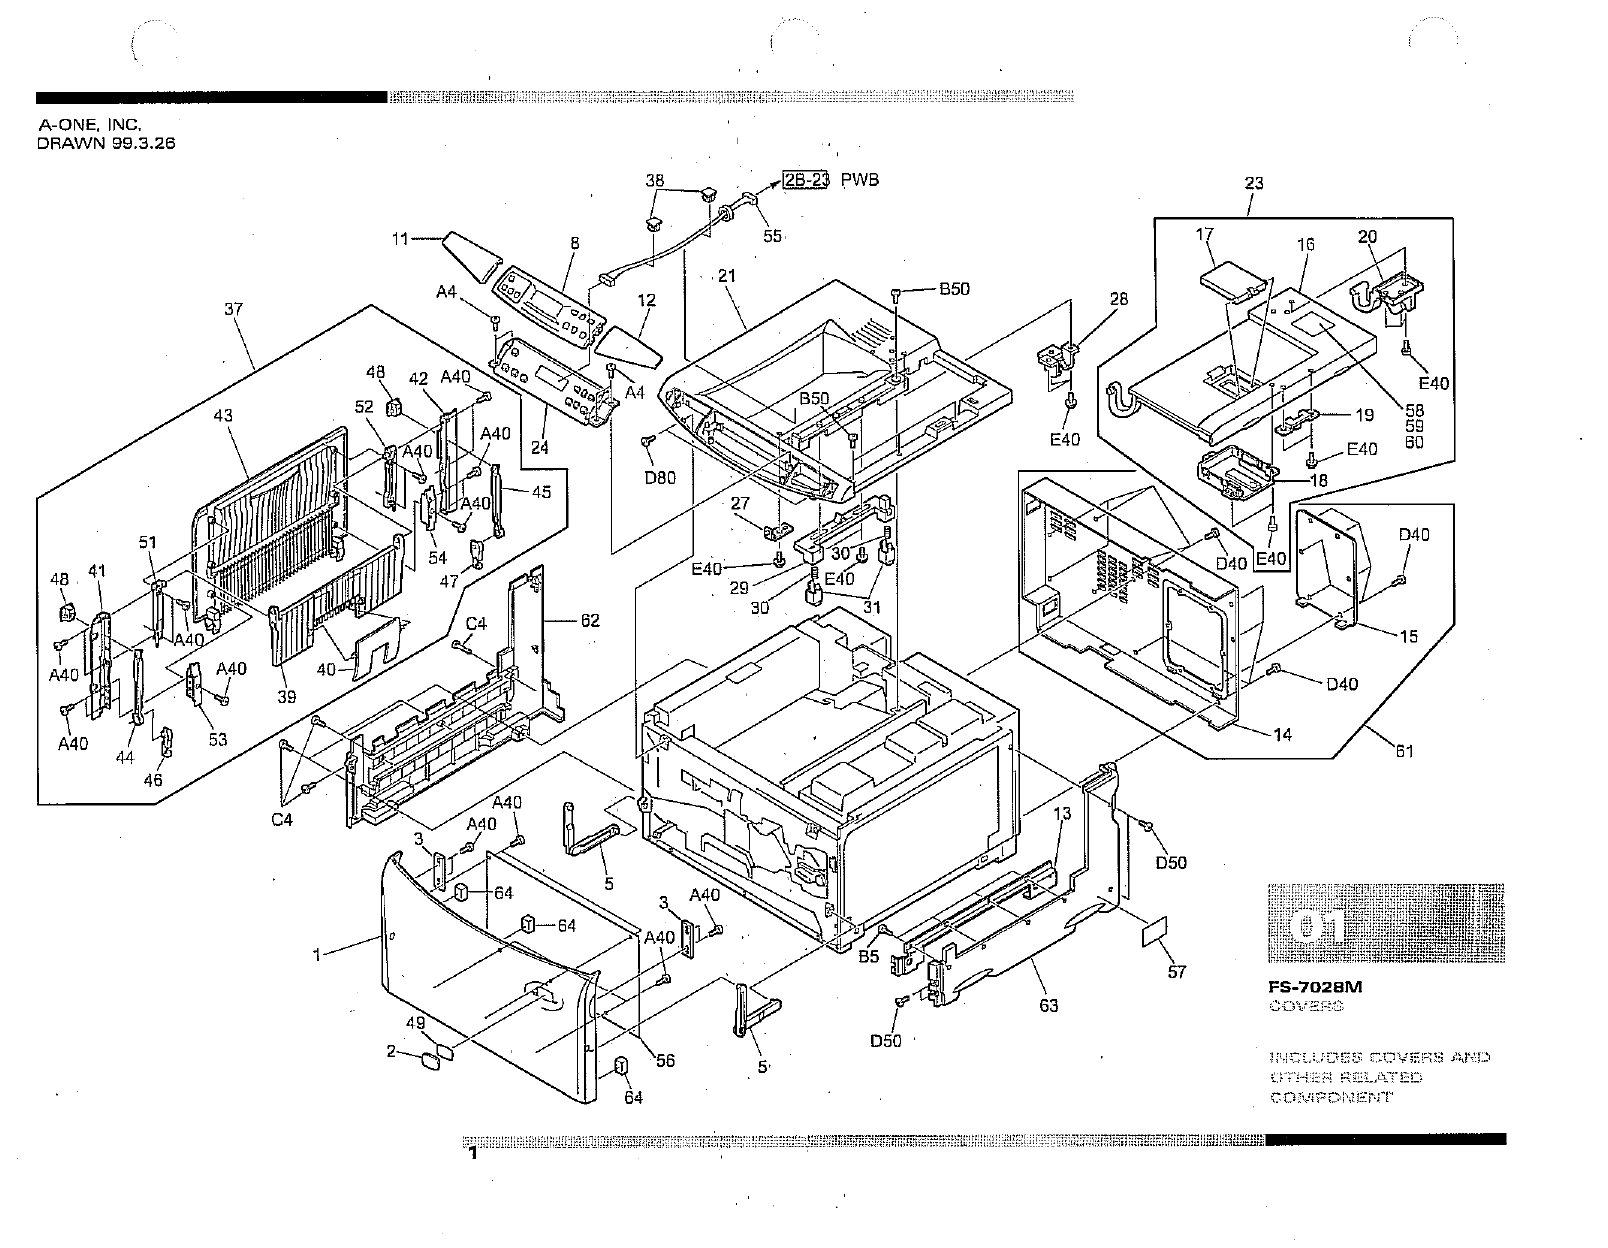 KYOCERA LaserPrinter FS-7028M Parts and Service Manual-6